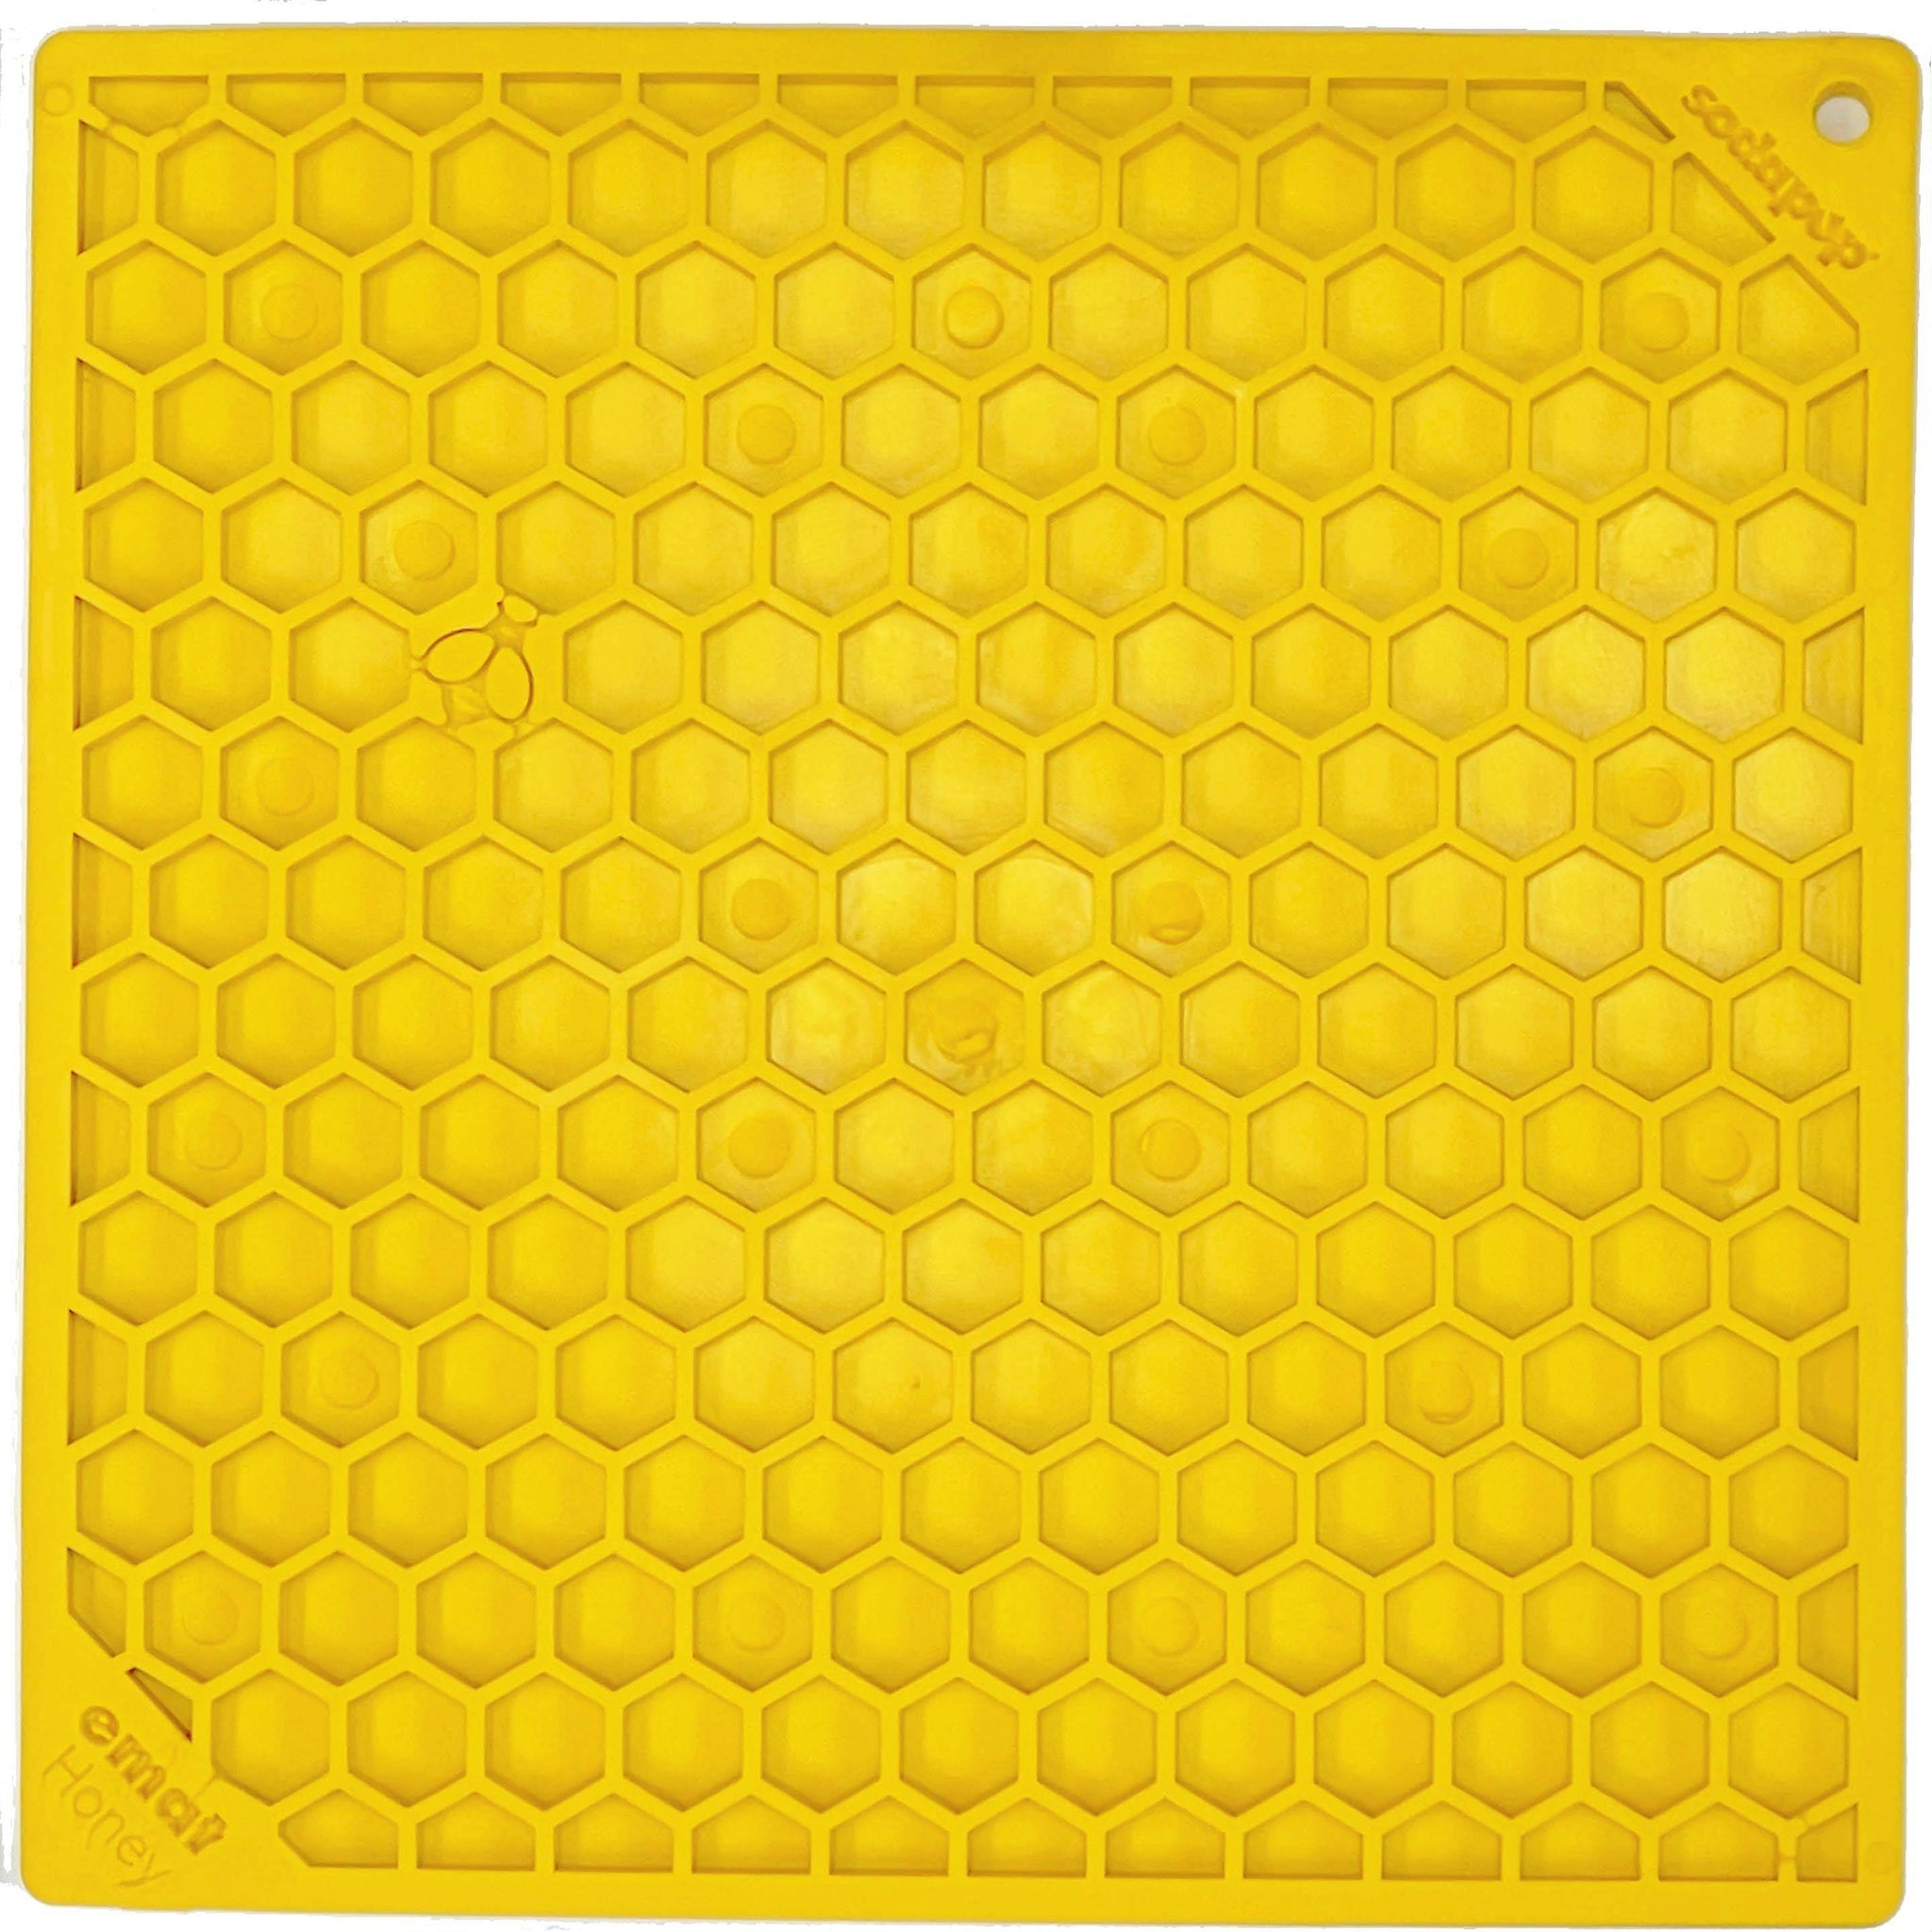 EMAT Lick Mat - Honeycomb